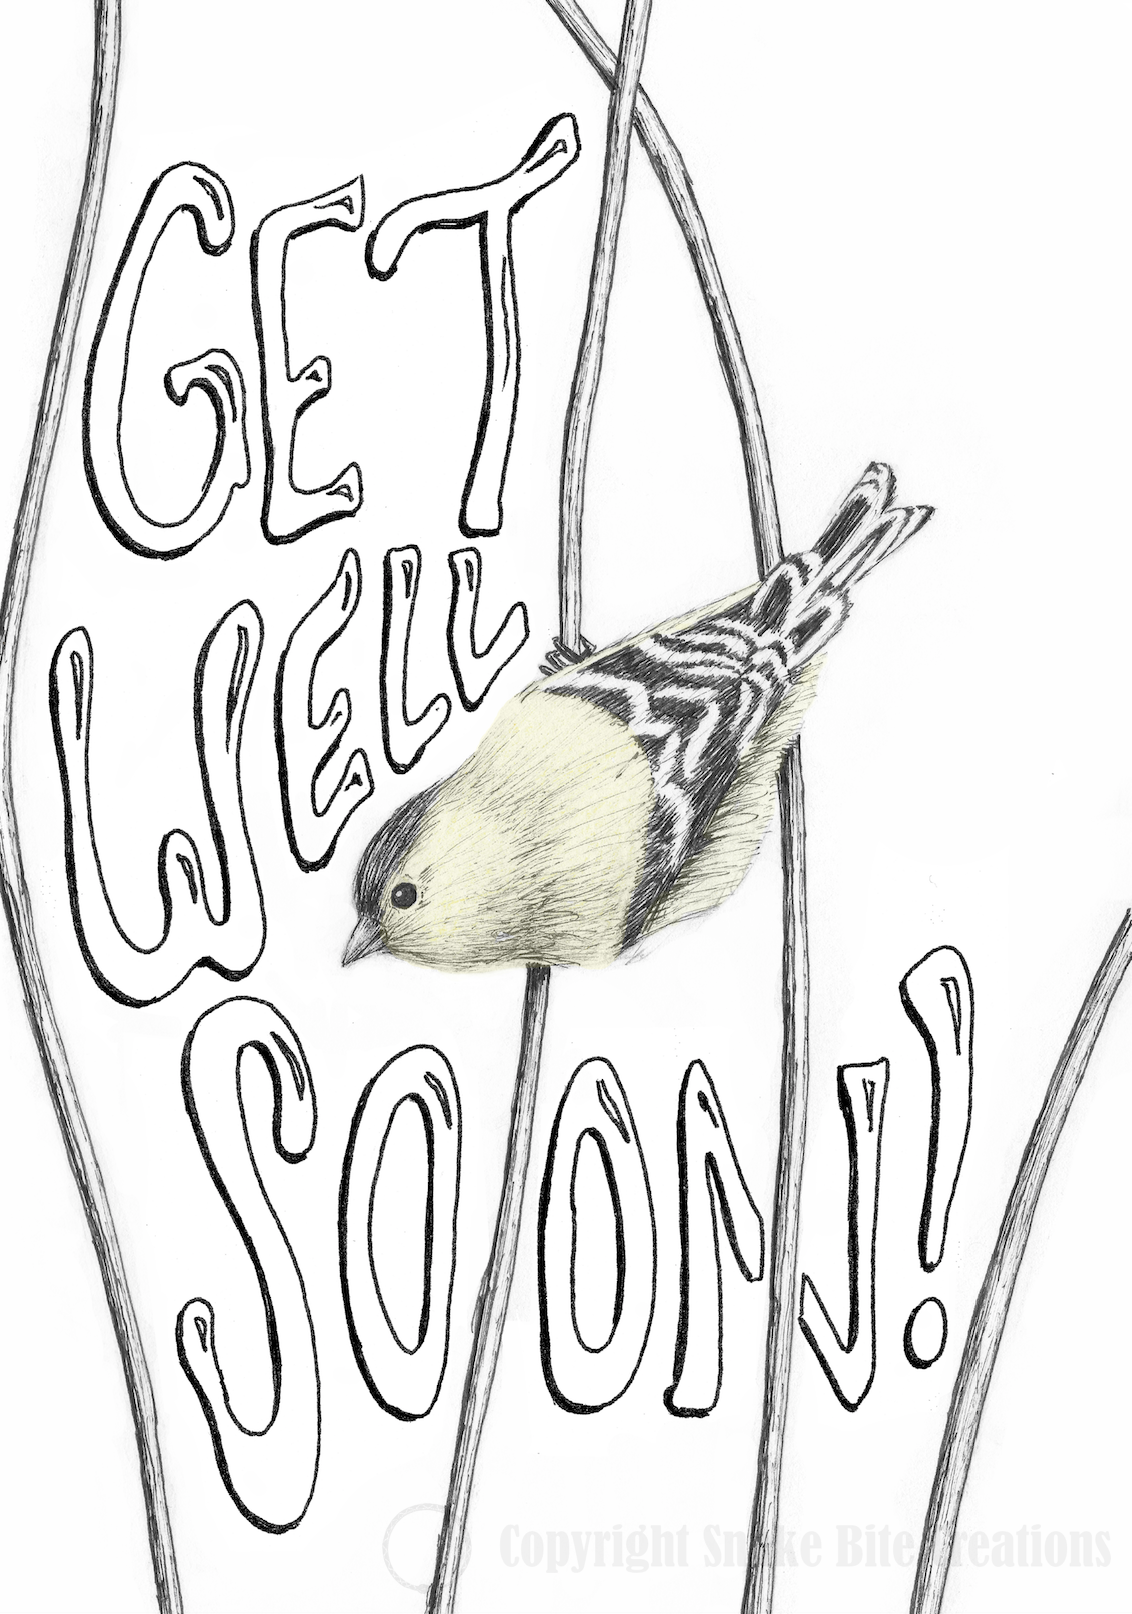 'Get Well Soon' Little Bird Card